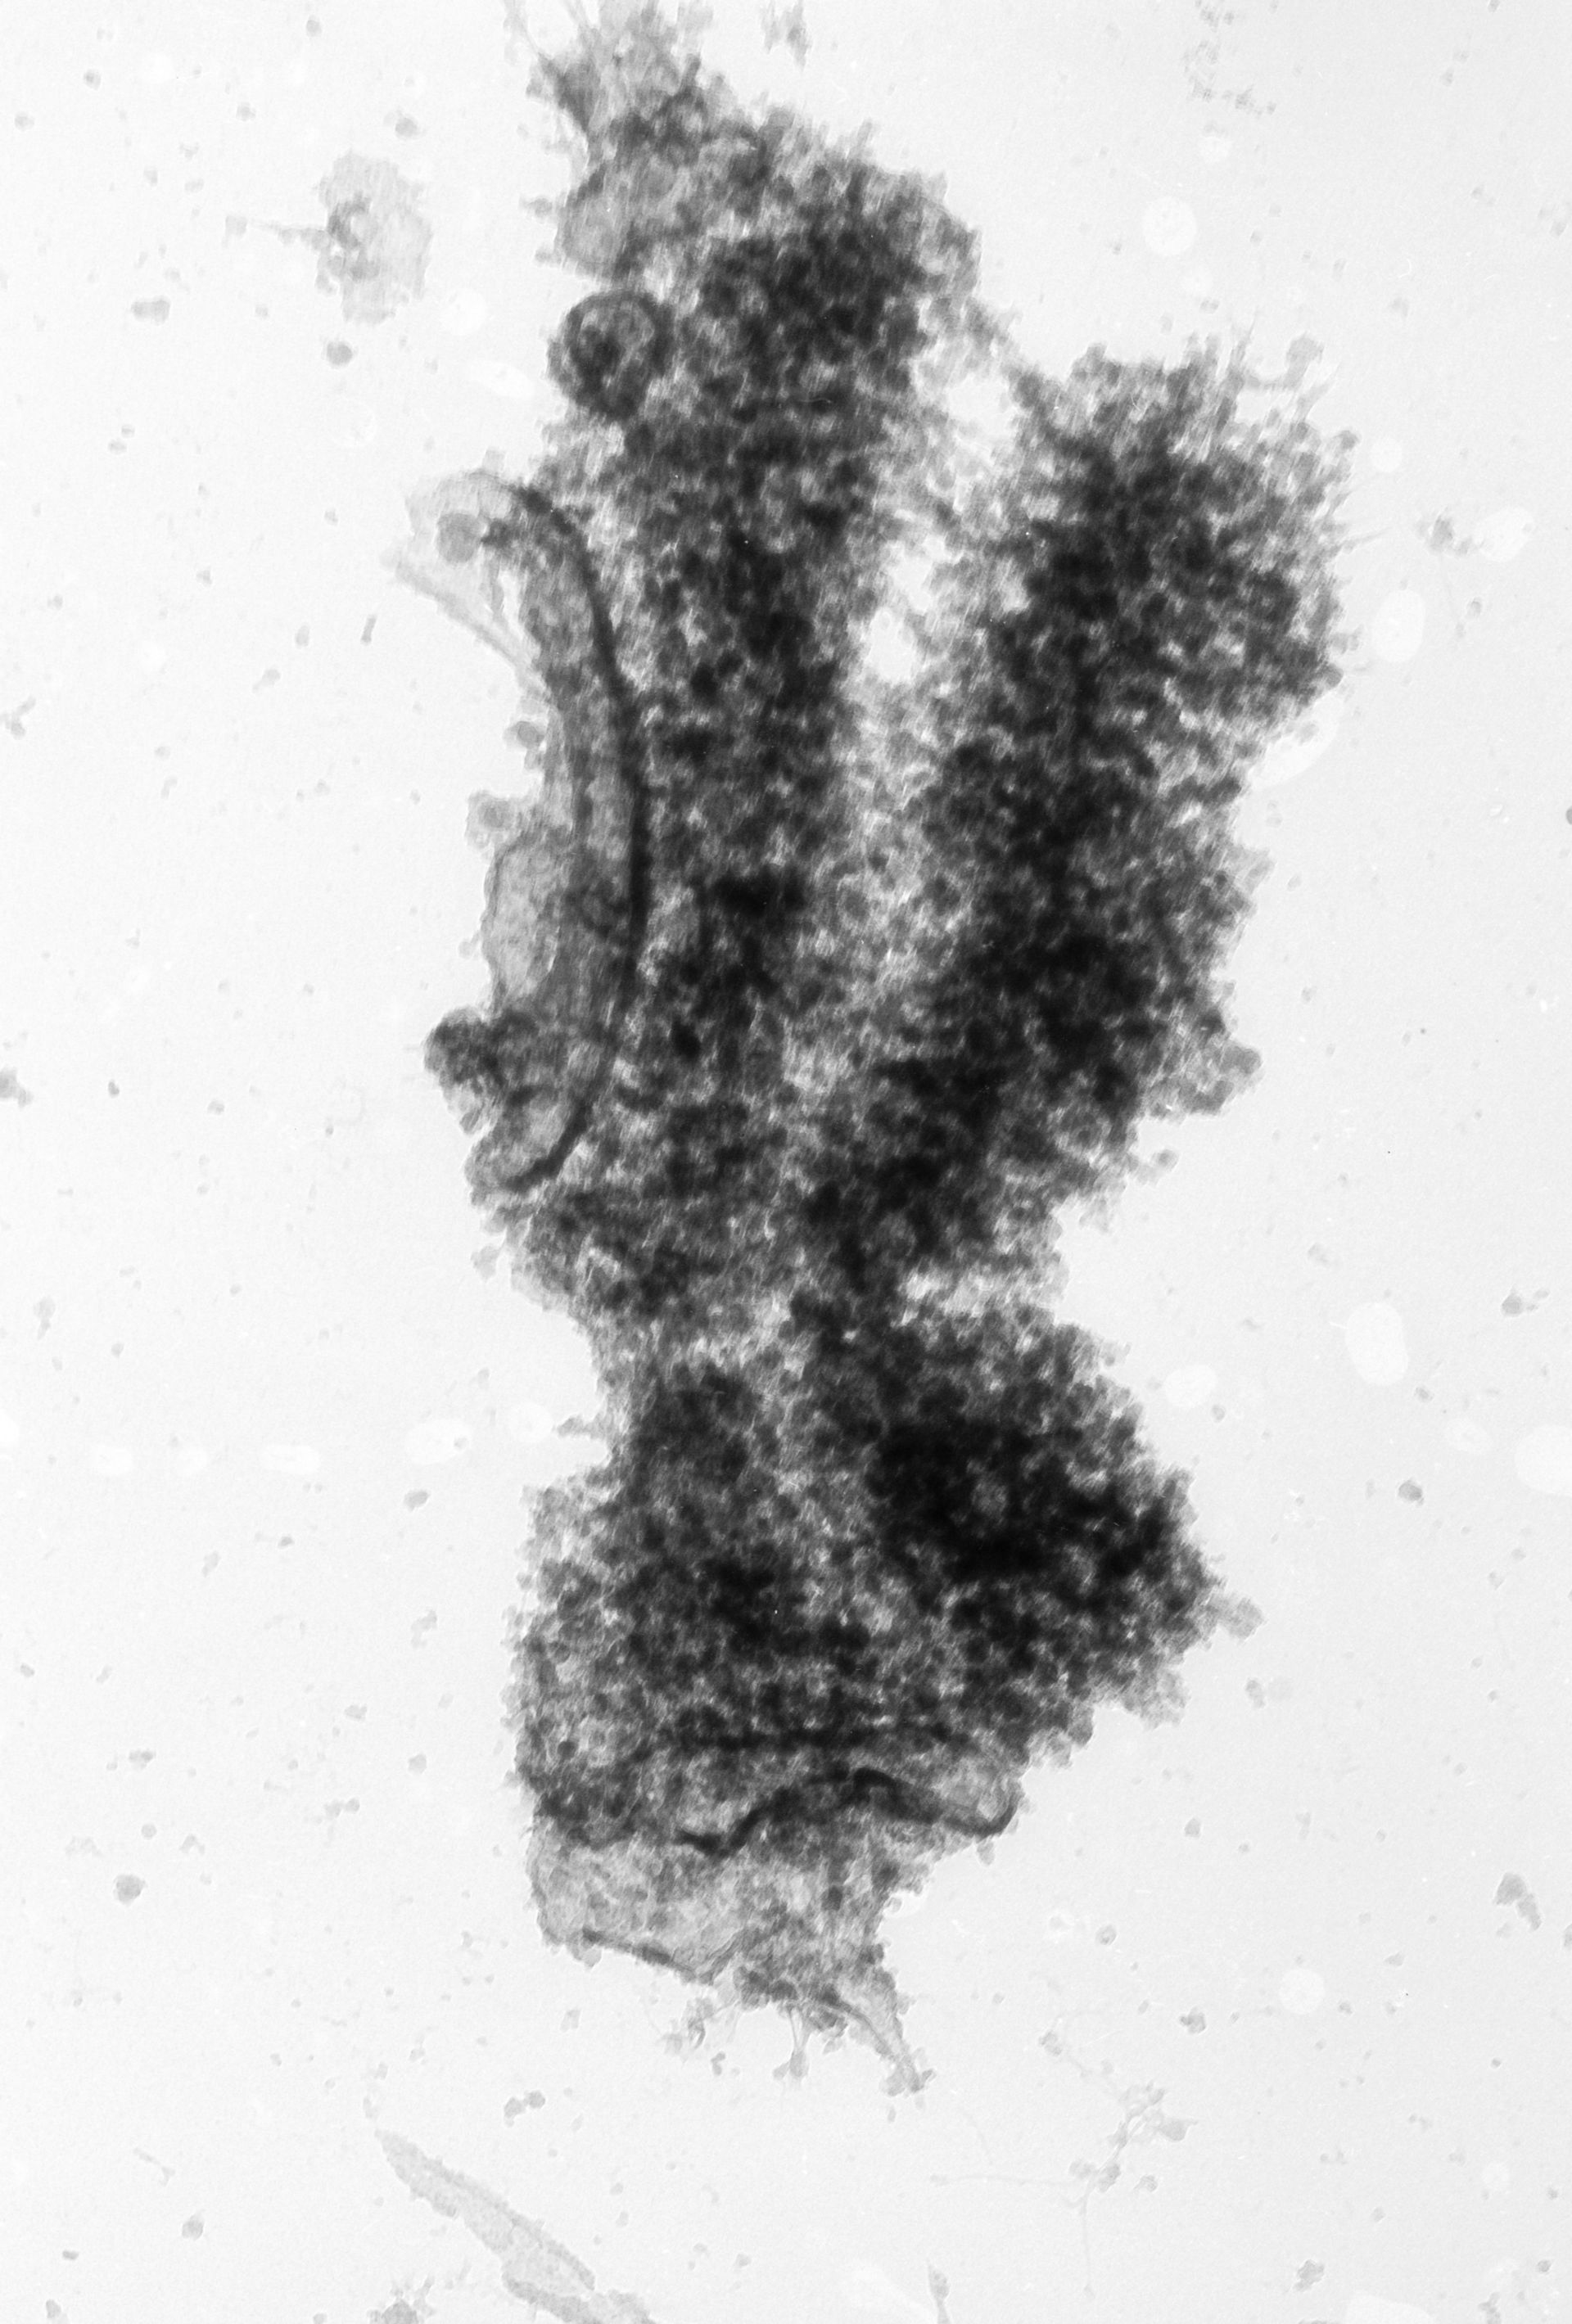 Cricetulus griseus (Nuclear chromosome) - CIL:40702